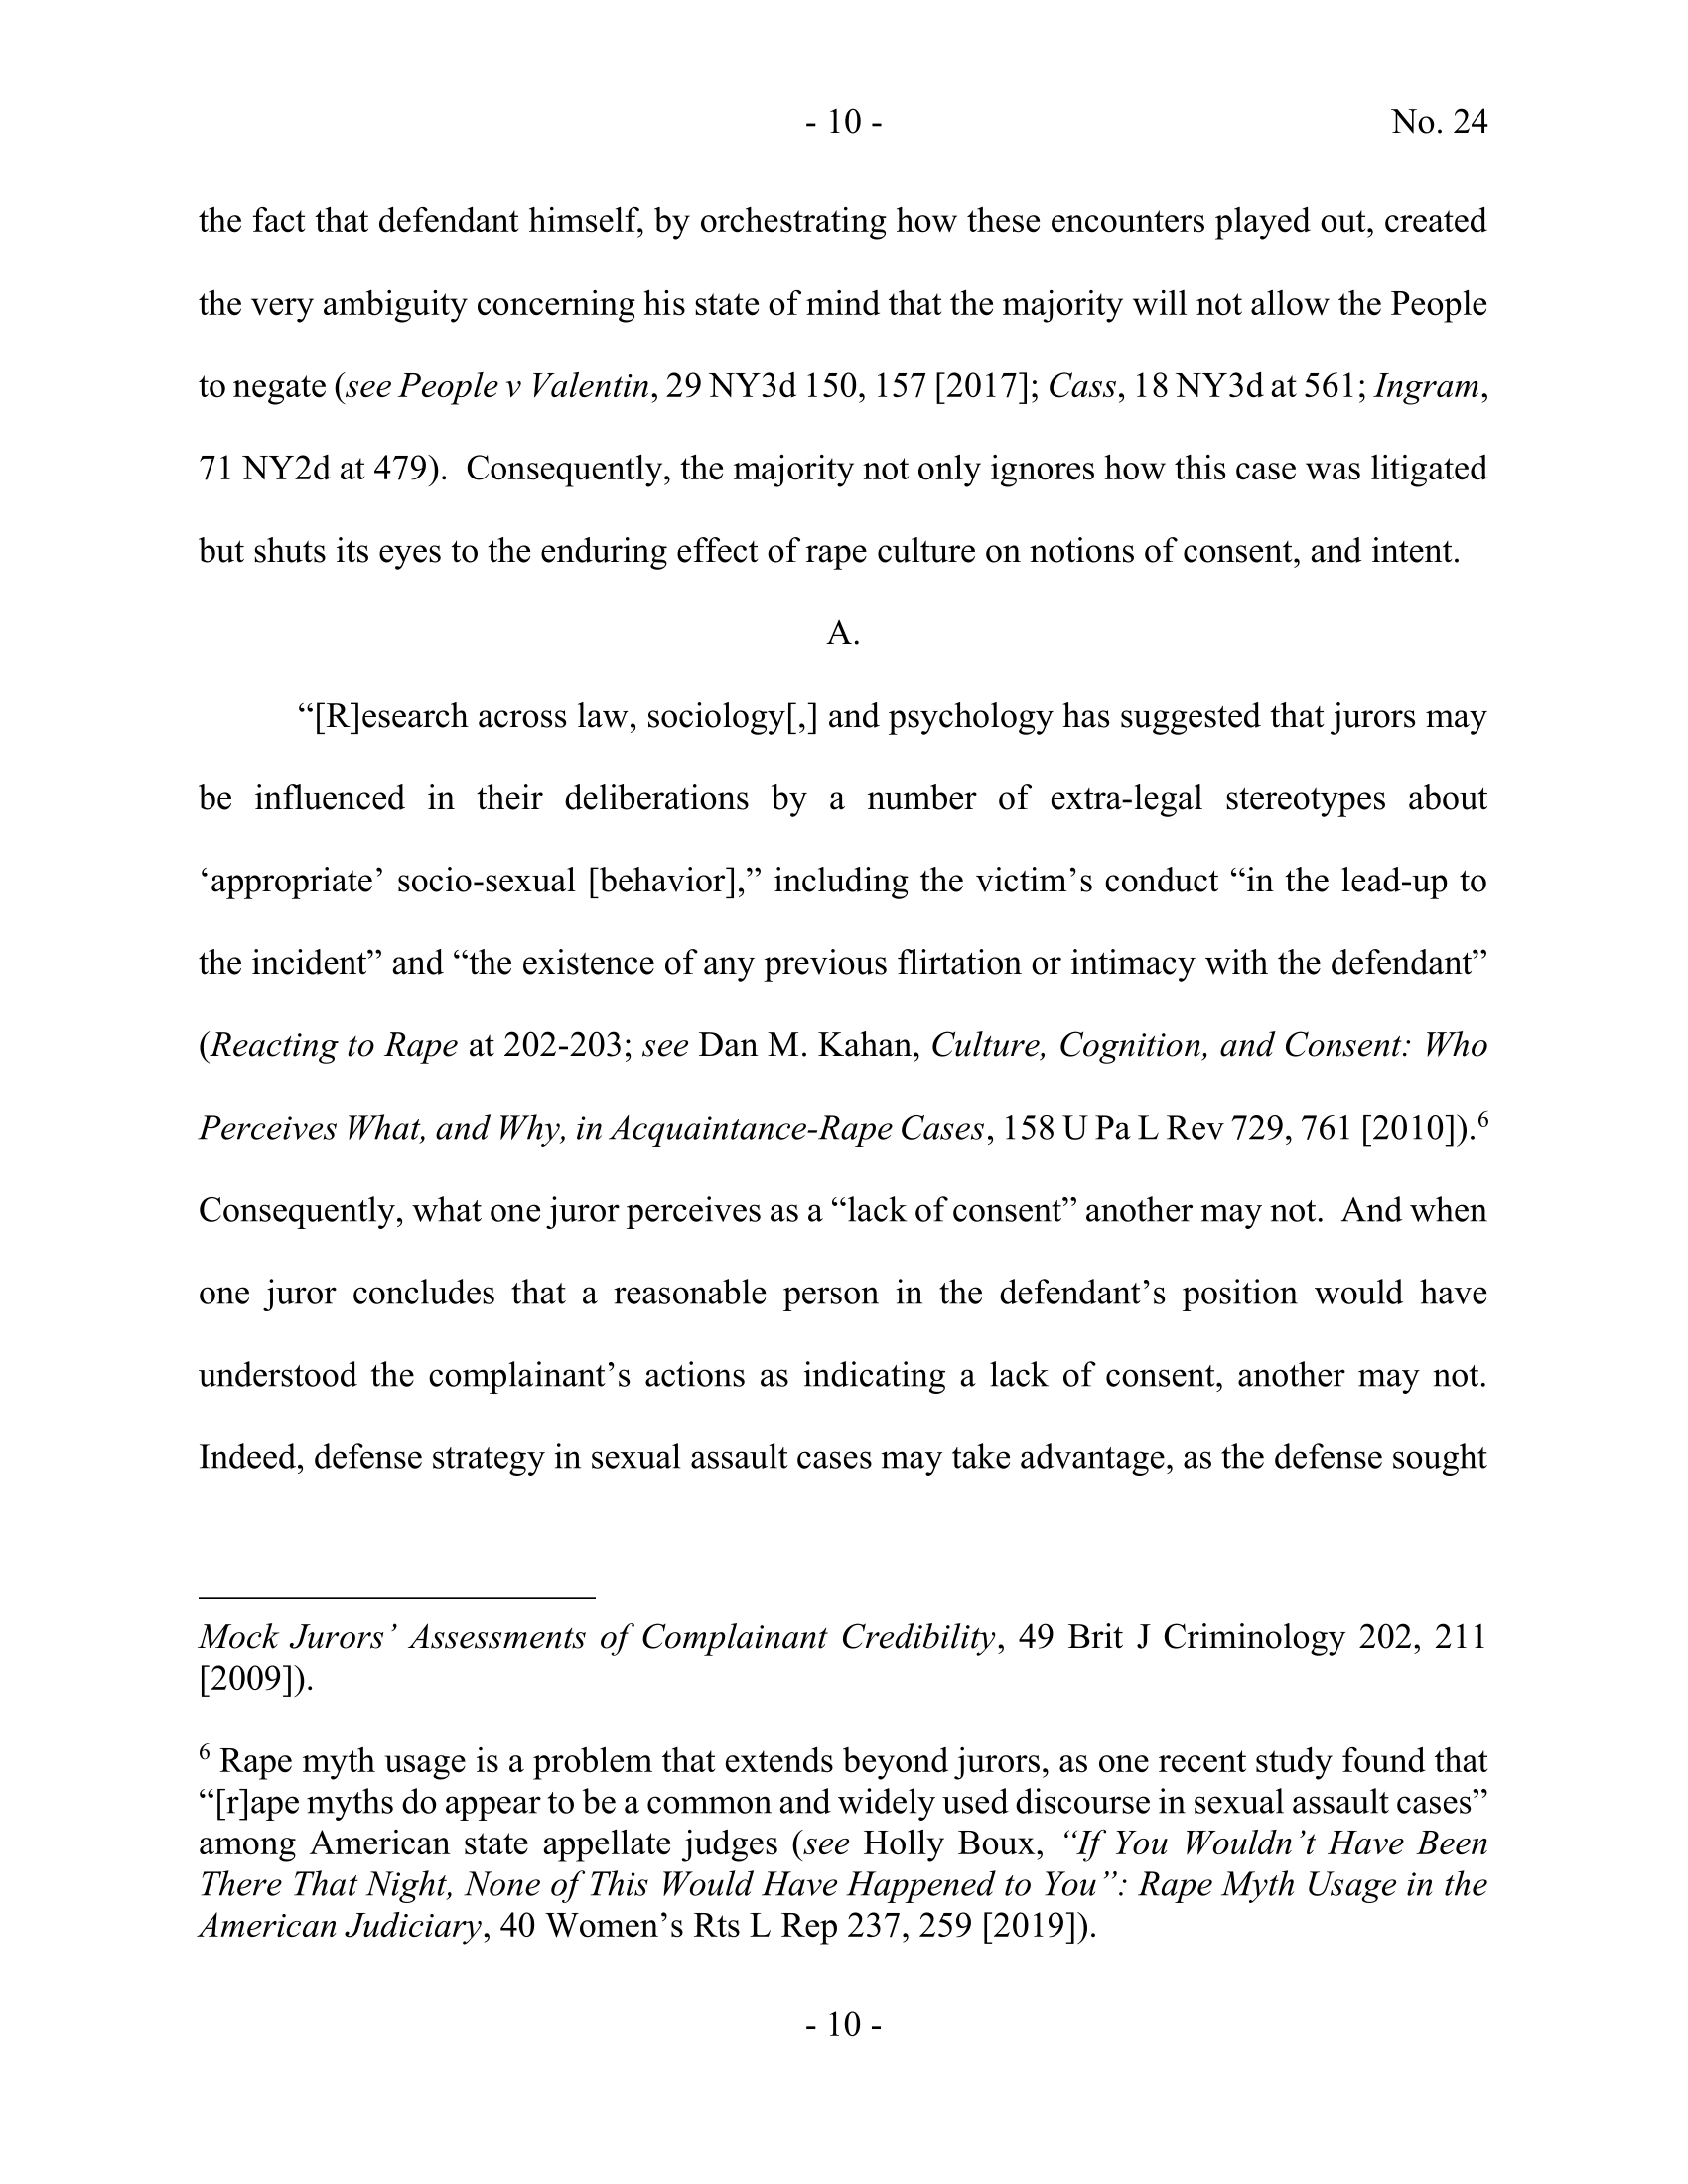 Seite 50 eines undefinierten PDF-Dokuments.